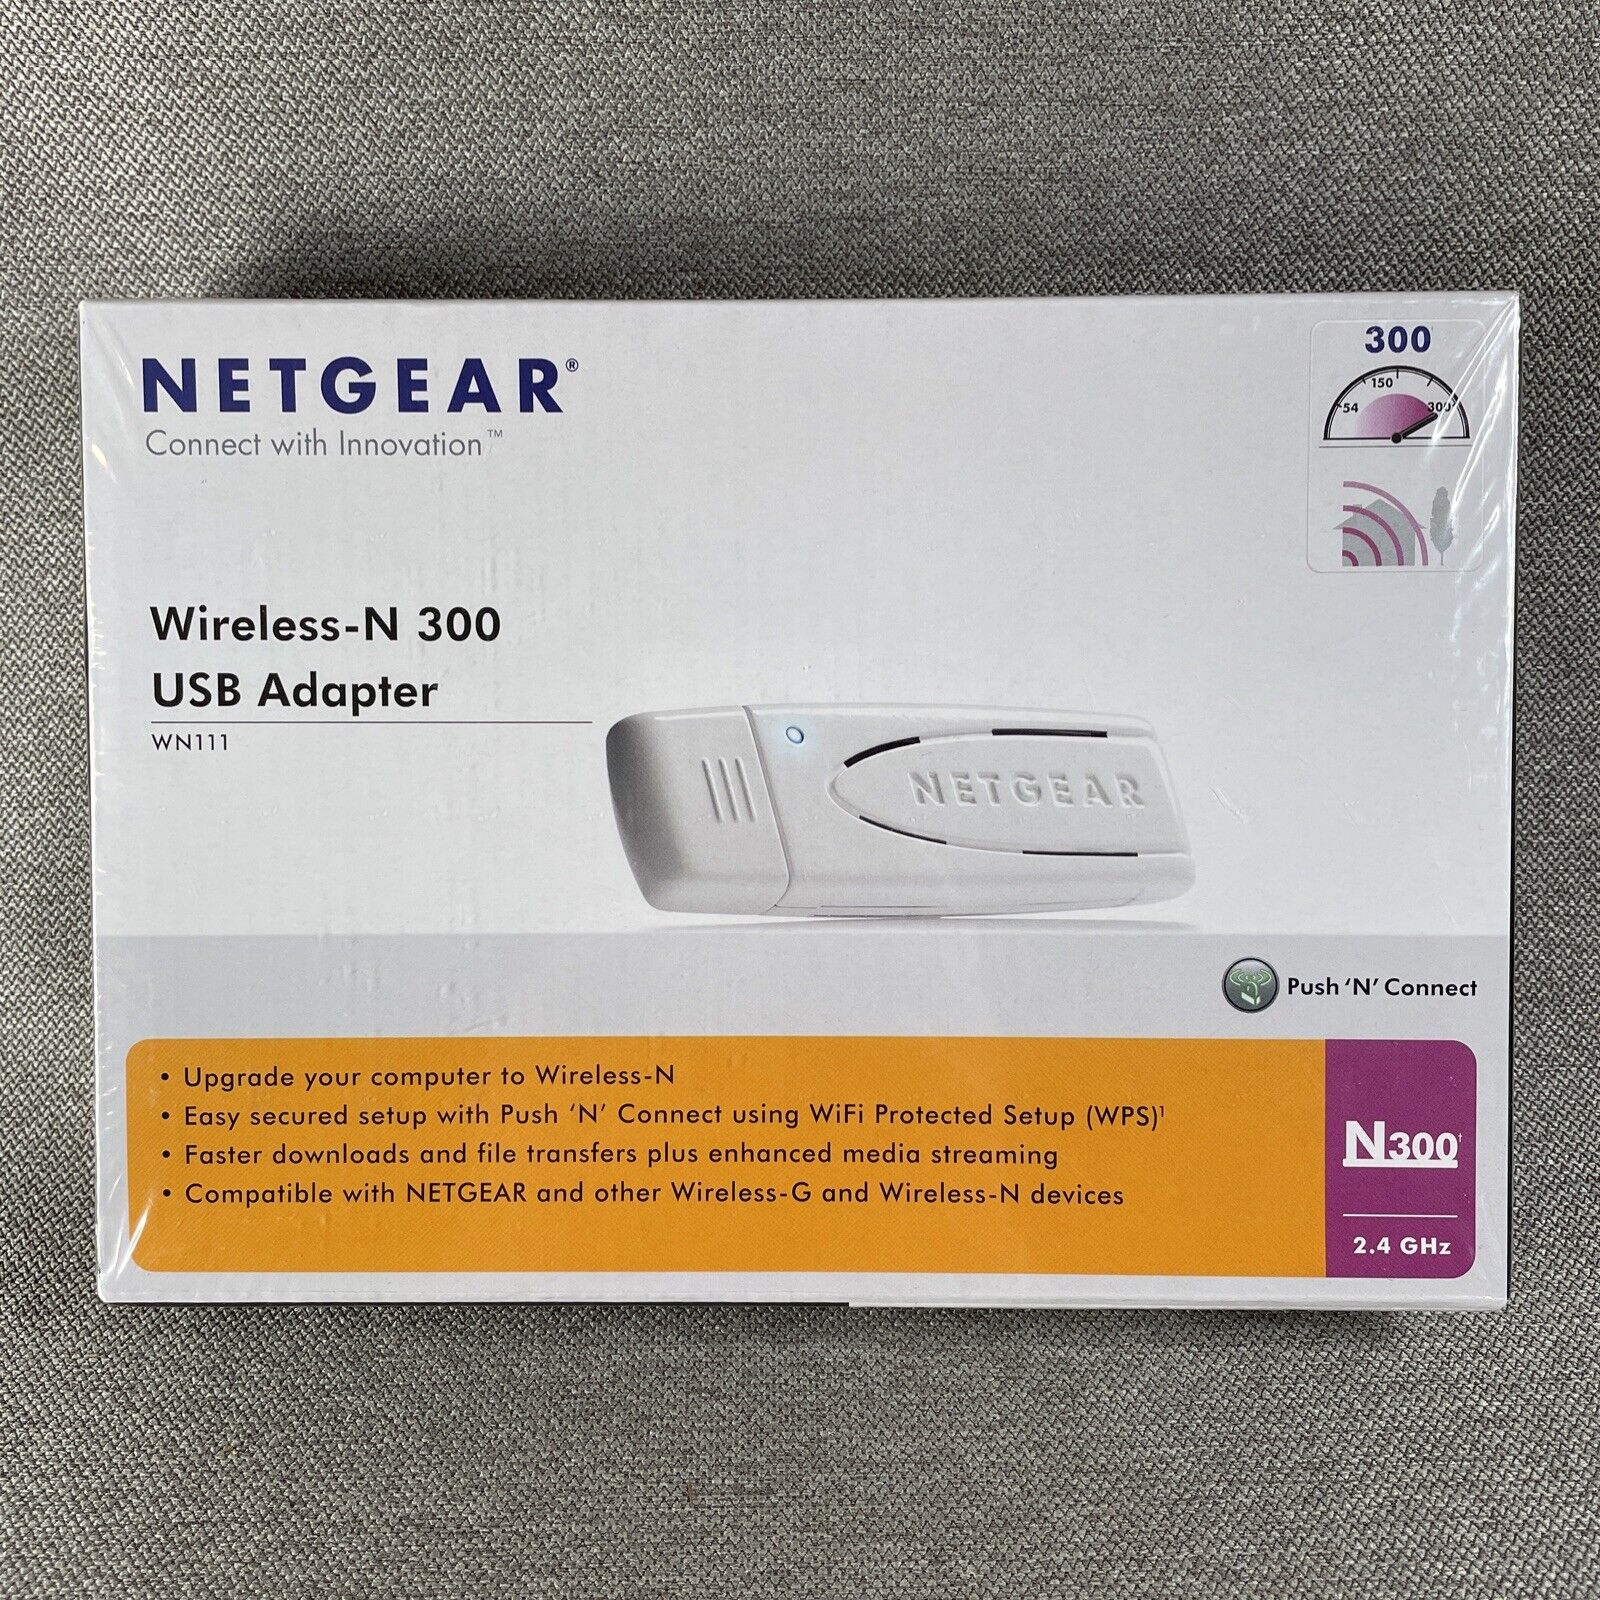 NEW NetGear Wireless-N300 USB WiFi Adapter Model WN111 (300Mbps) 2.4 GHz